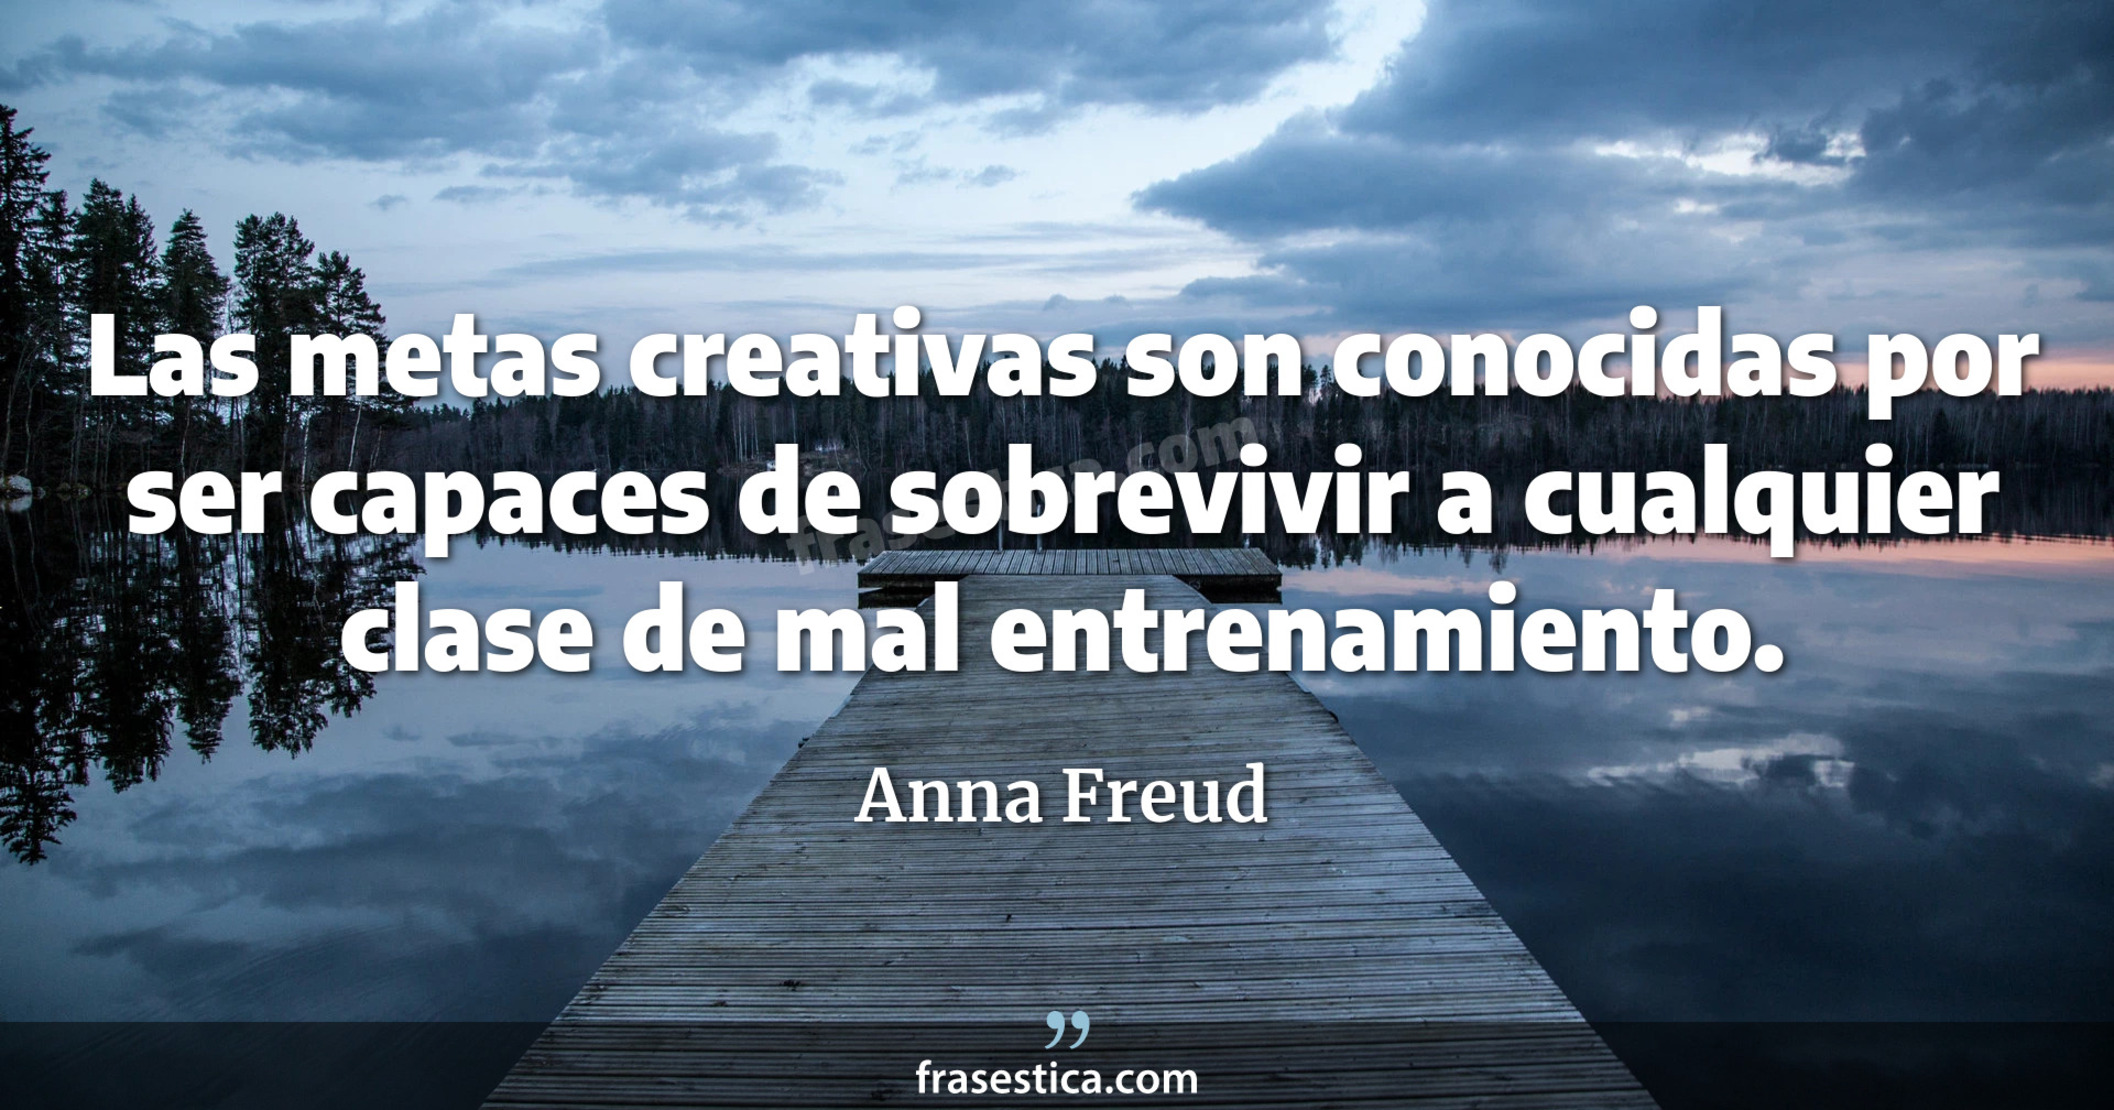 Las metas creativas son conocidas por ser capaces de sobrevivir a cualquier clase de mal entrenamiento. - Anna Freud